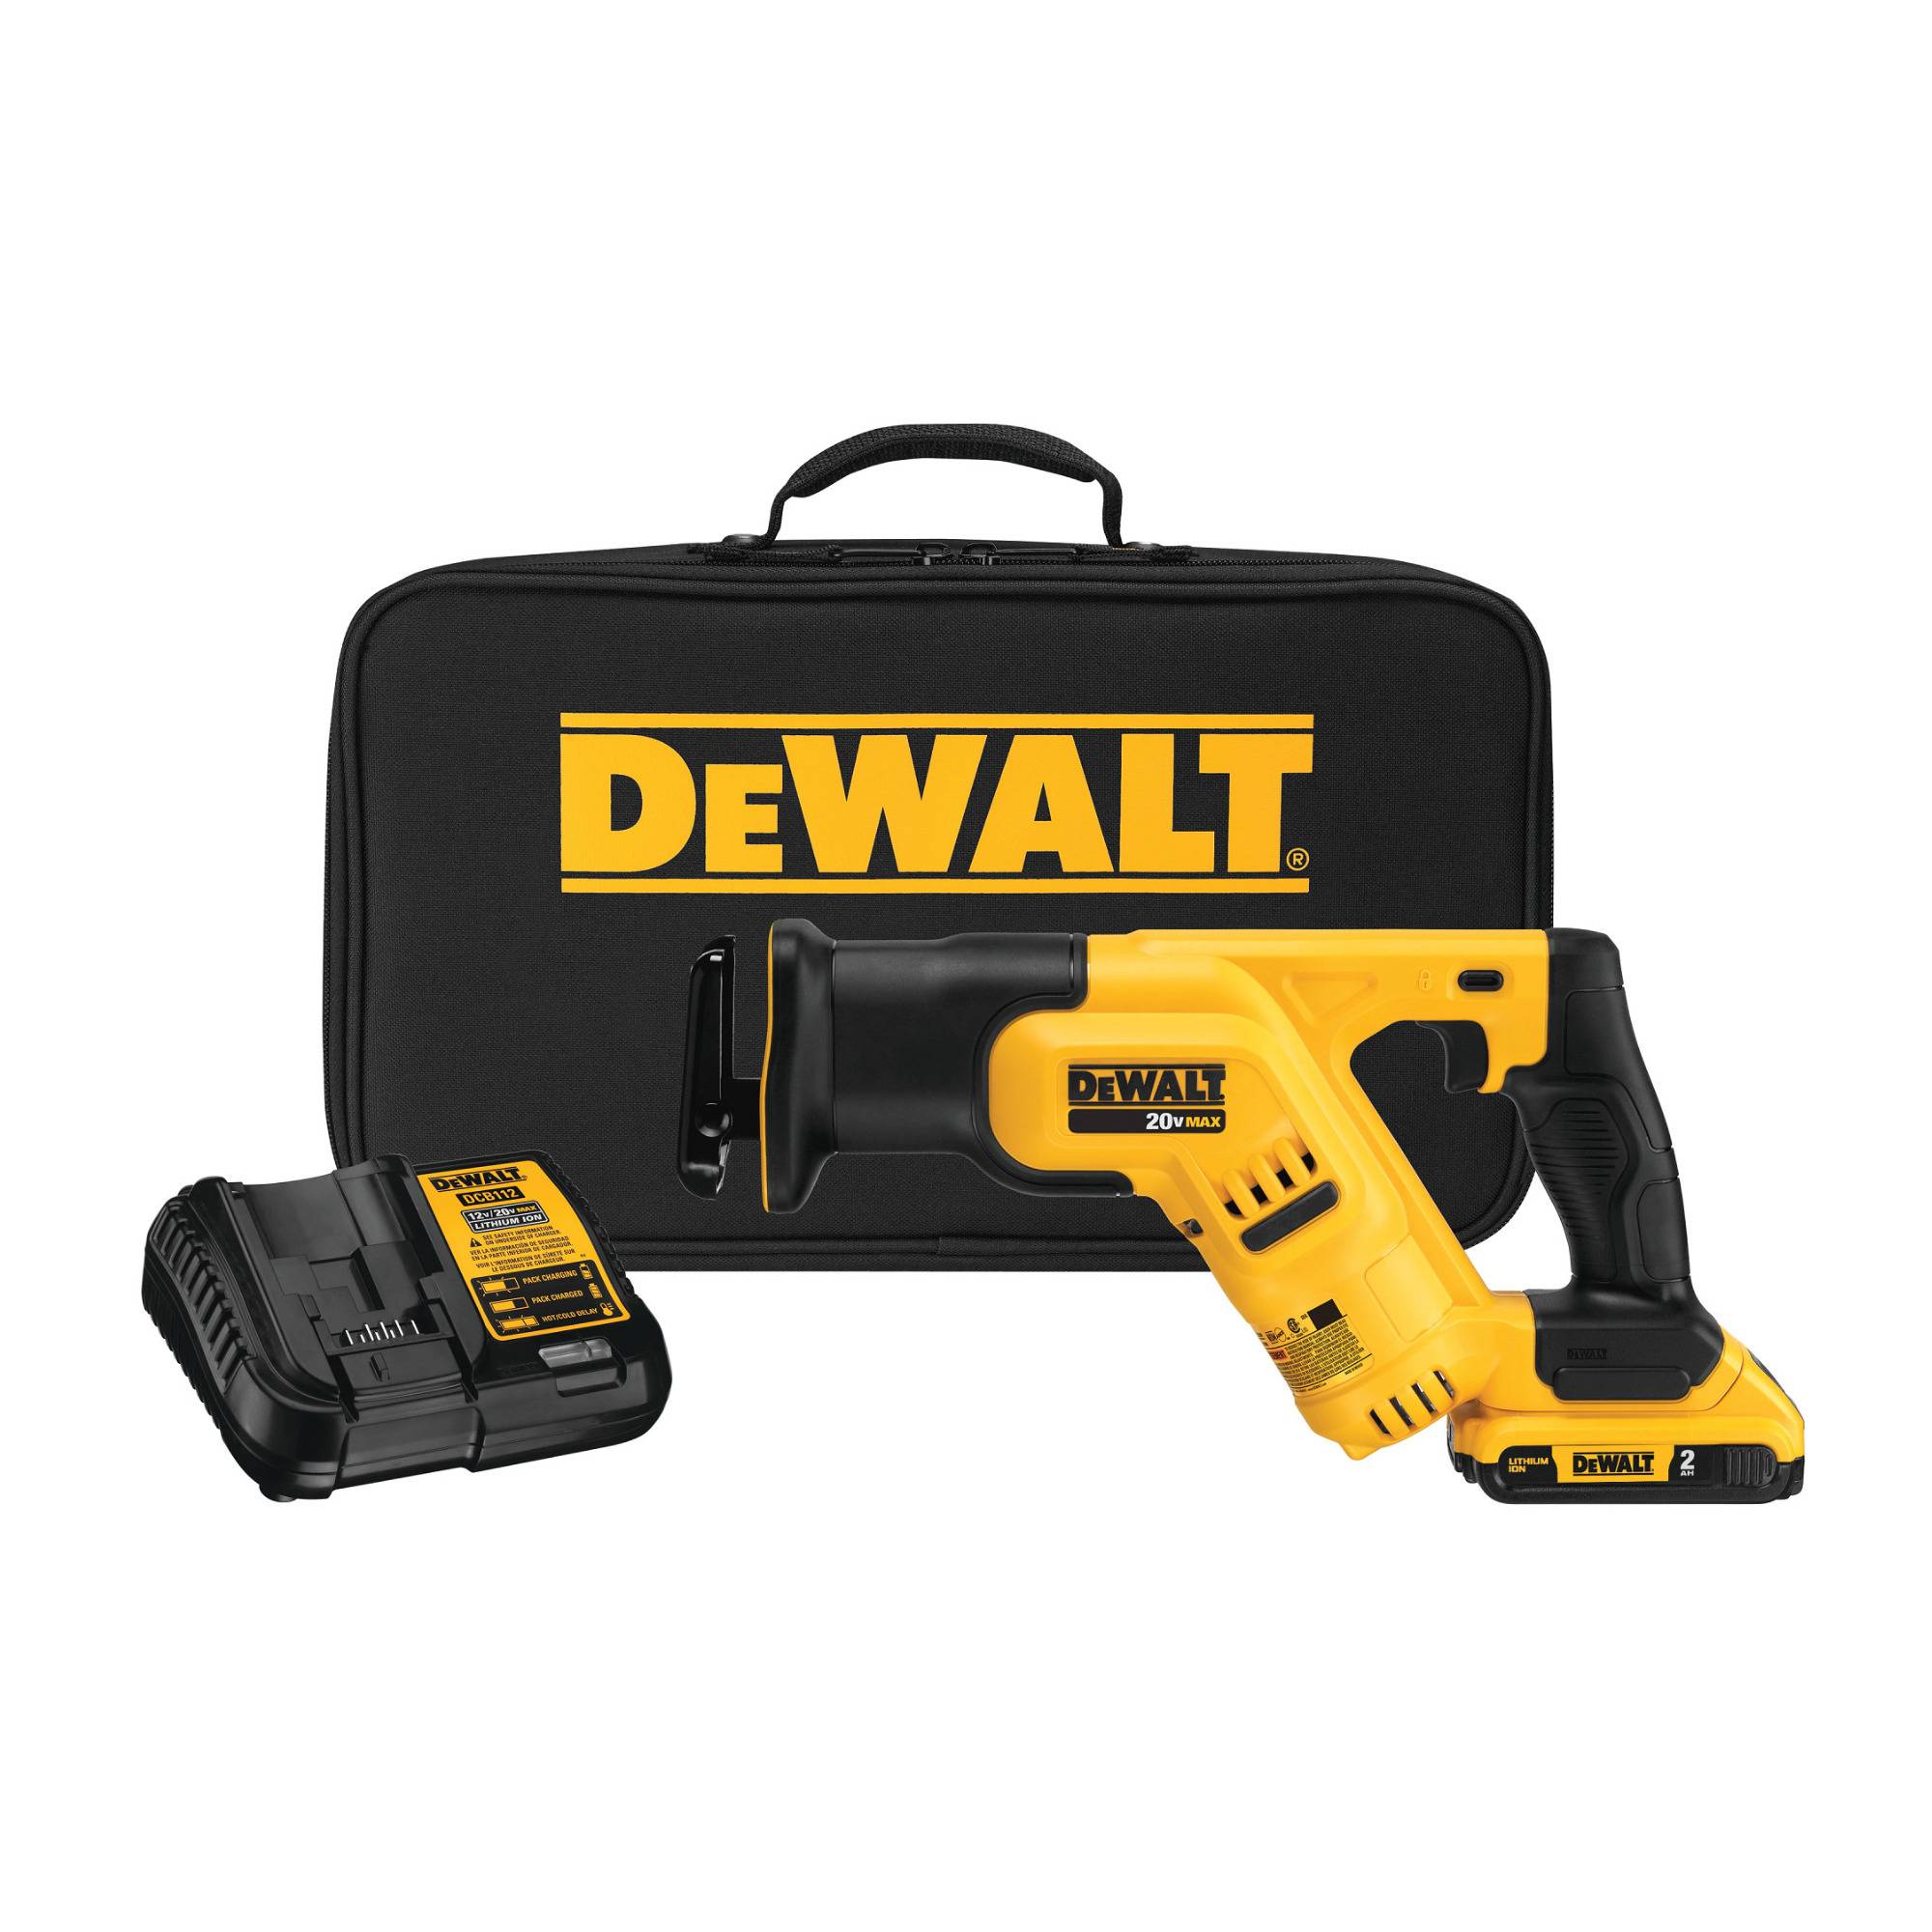 DEWALT DCS387D1 20V MAX Cordless Reciprocating Saw Kit